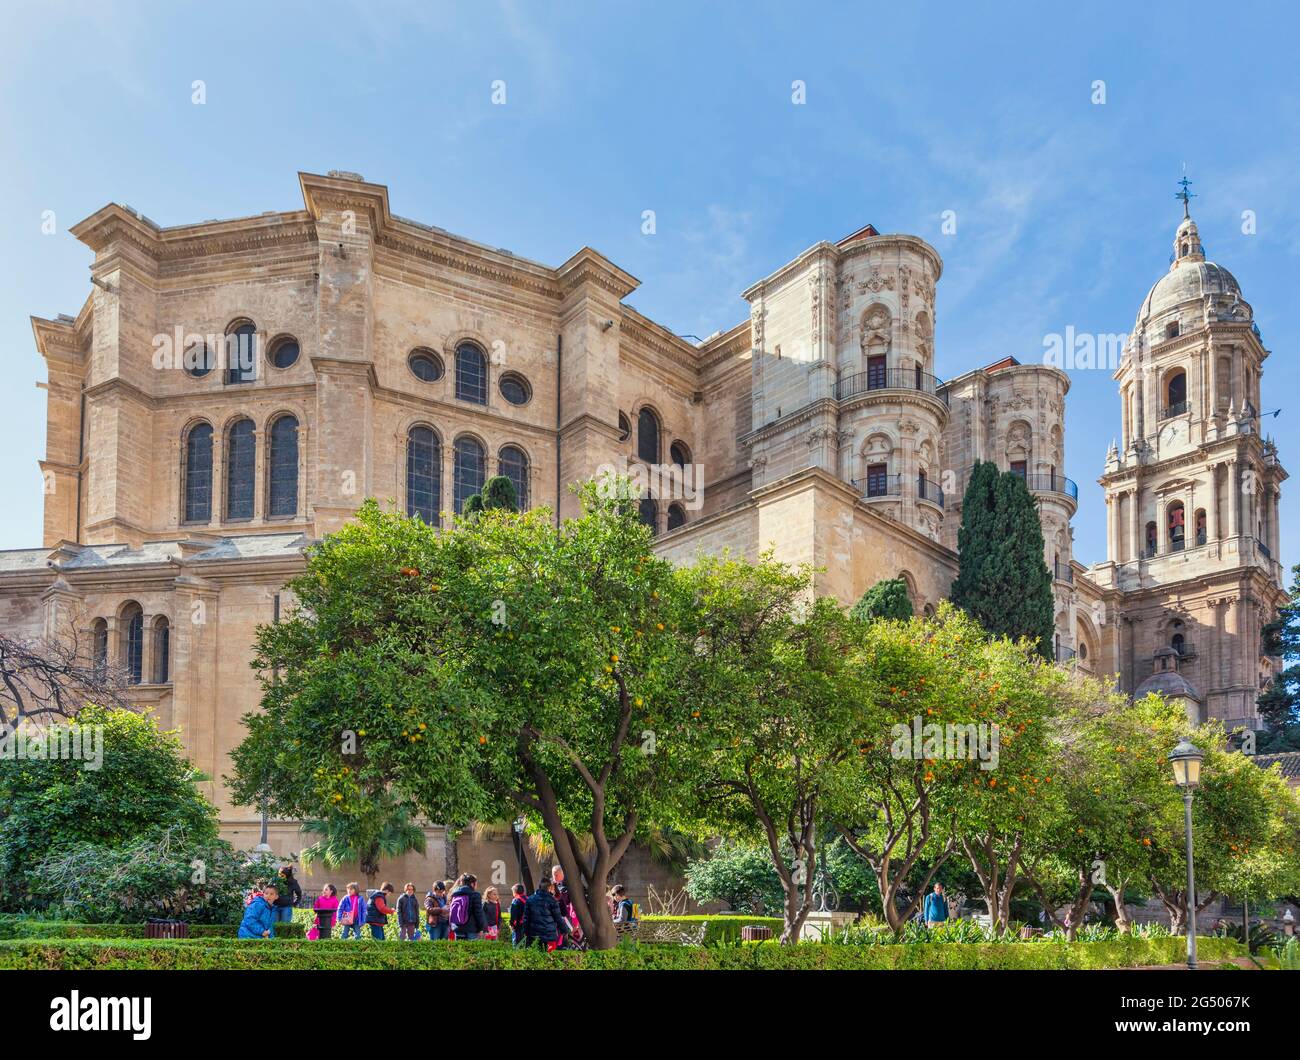 Malaga, Provinz Malaga, Costa del Sol, Spanien. Die Renaissance-Kathedrale. Der vollständige spanische Name ist La Santa Iglesia Catedral Basilica de la Encarnacion. Stockfoto